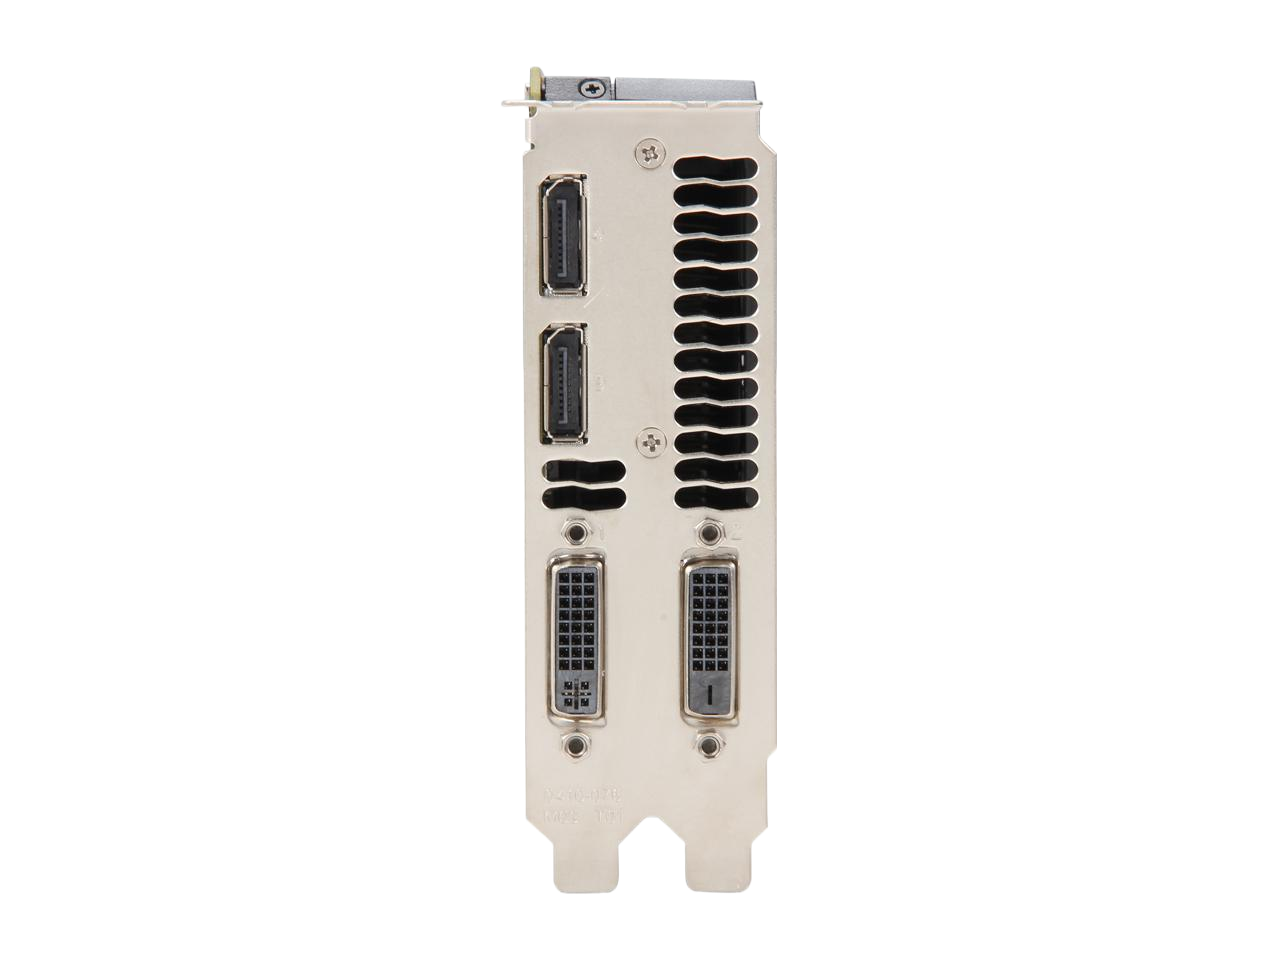 NVIDIA Quadro K5000 for Mac 4GB 256-bit GDDR5 PCI Express 2.0 x16 SLI Supported Workstation Video Card VCQK5000MAC-PB